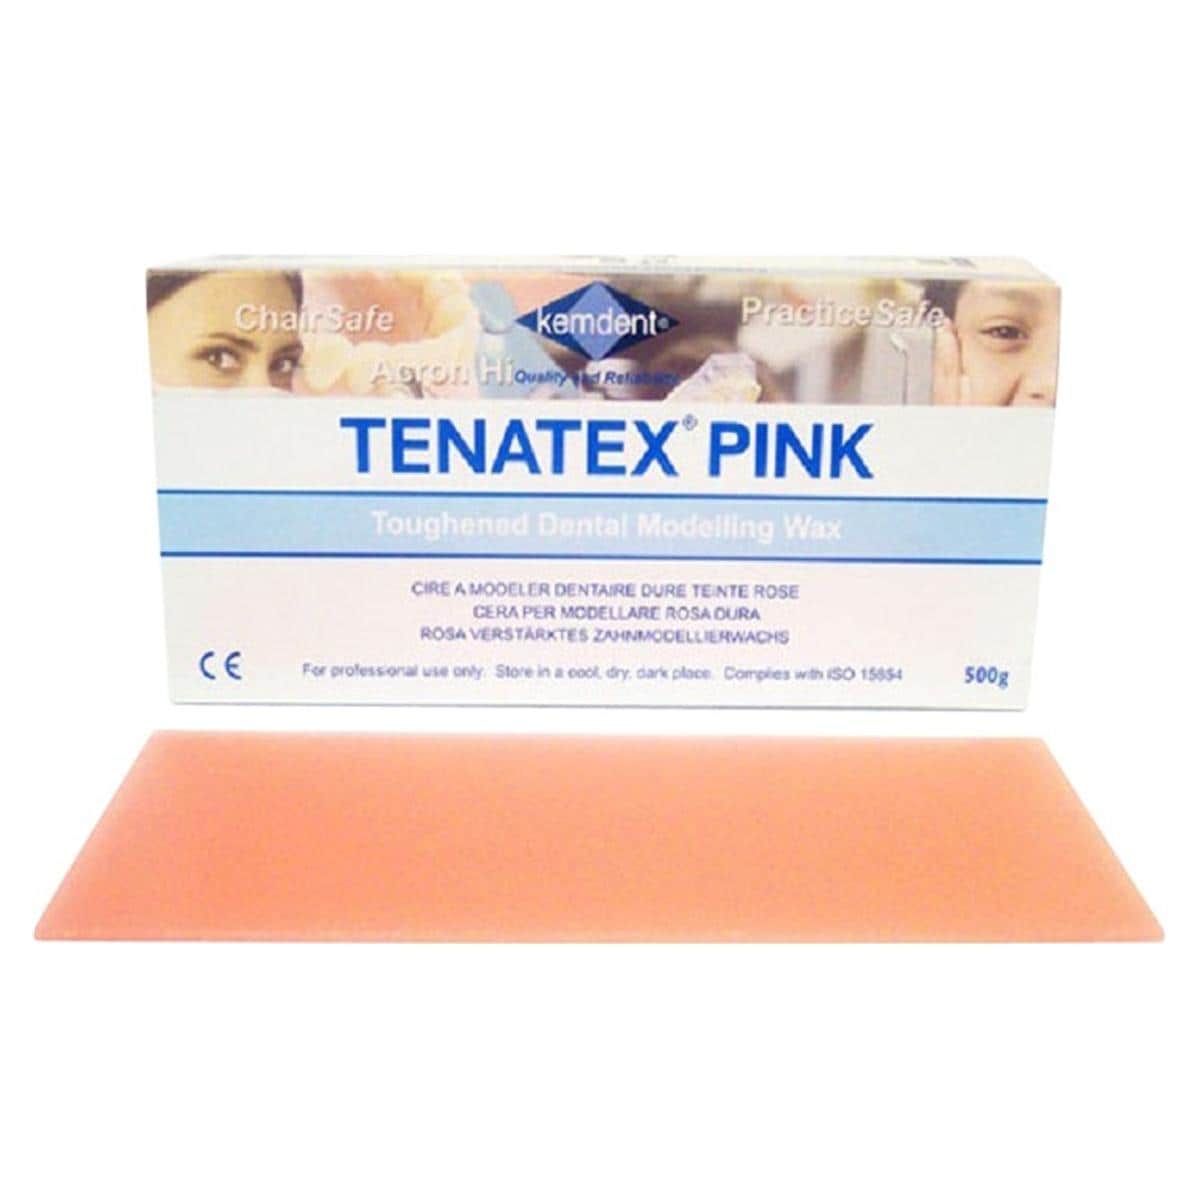 Tenatex was roze - Verpakking, 500 g